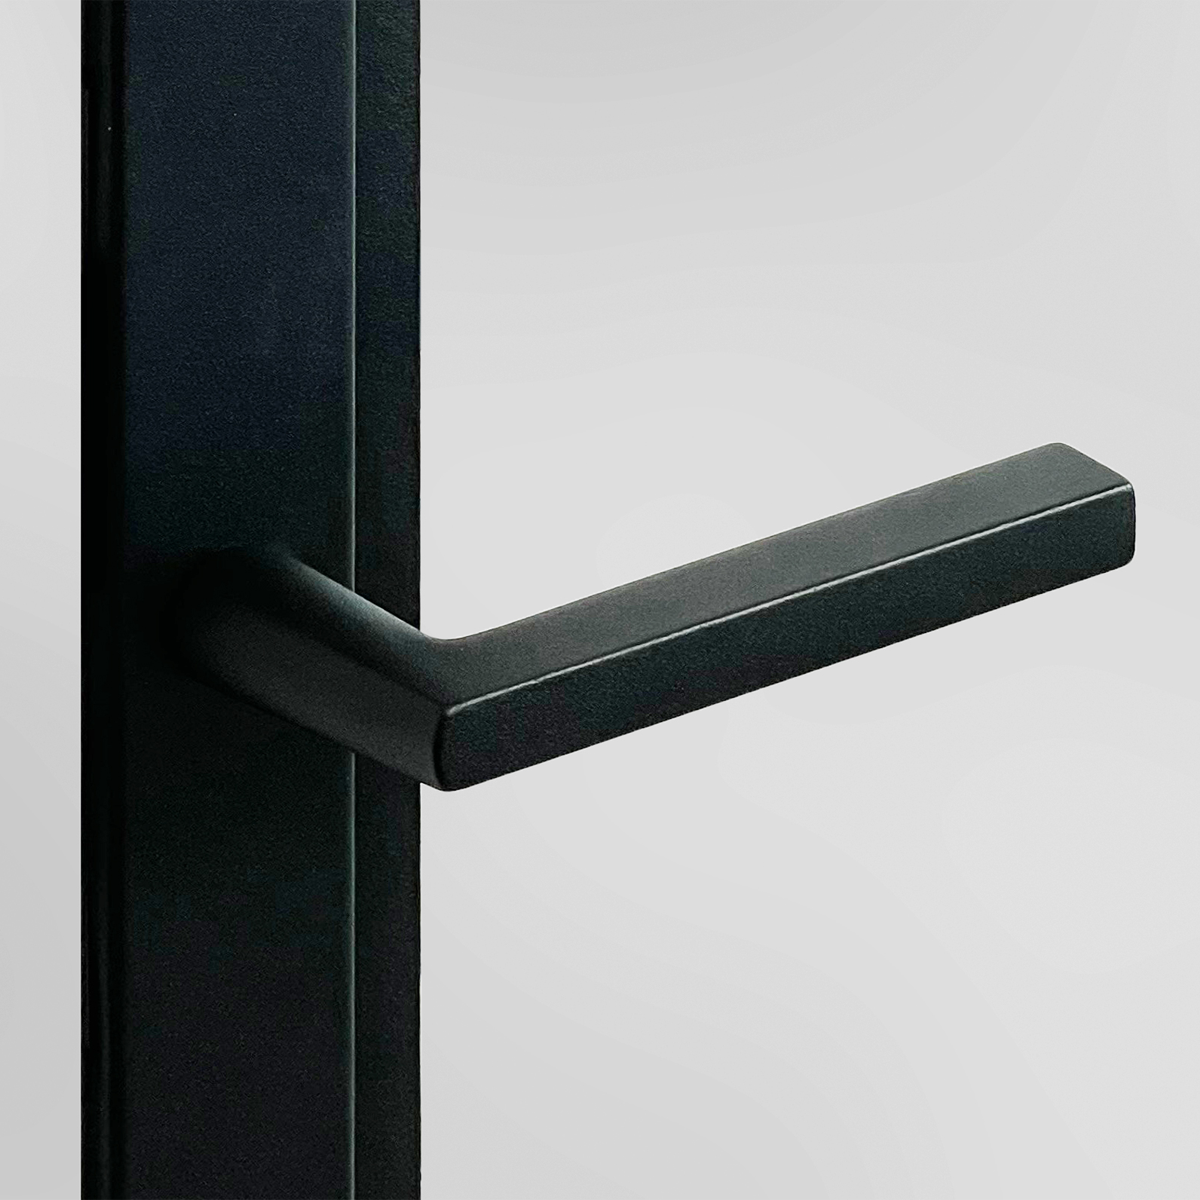 Steelit Door Invisible S20 Modern 4E